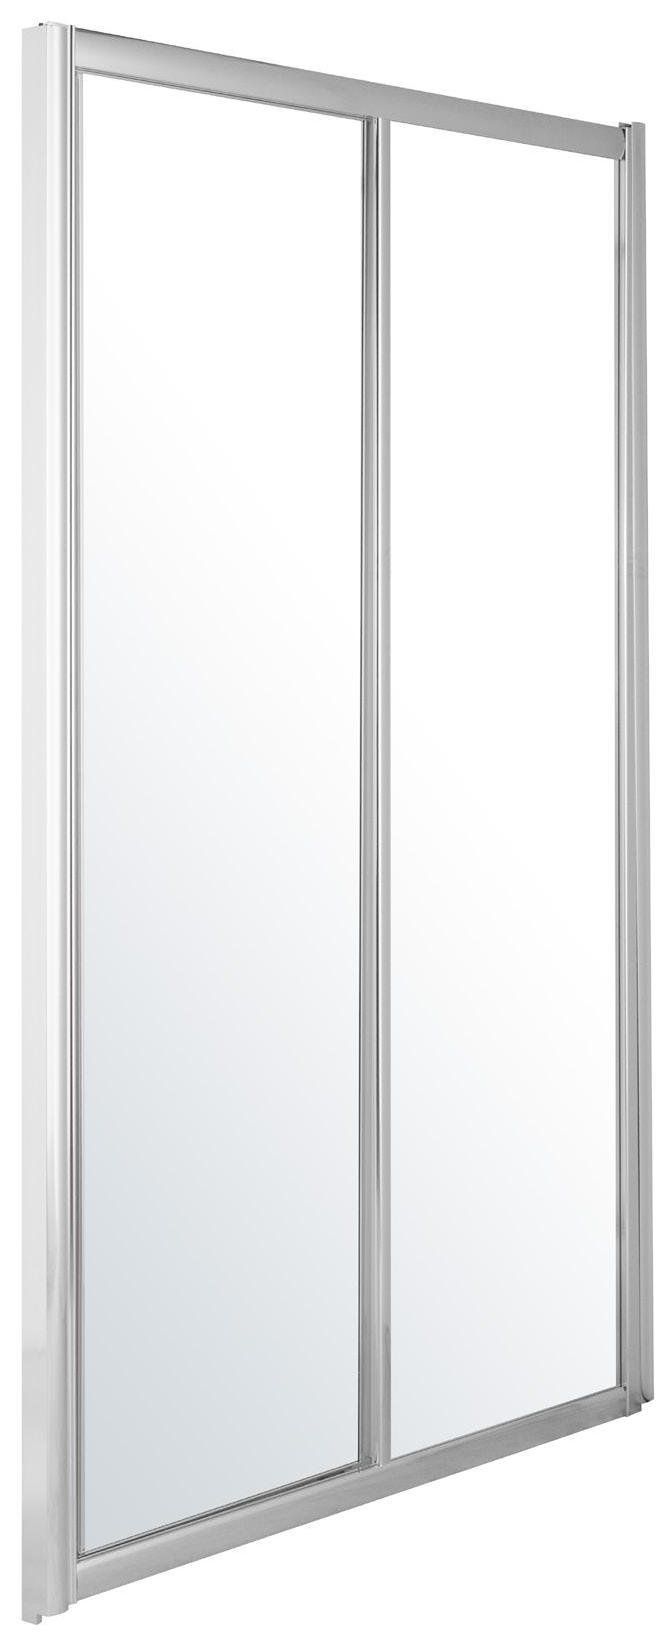 Двері душової кабіни Eger 599-153(h) 120x195